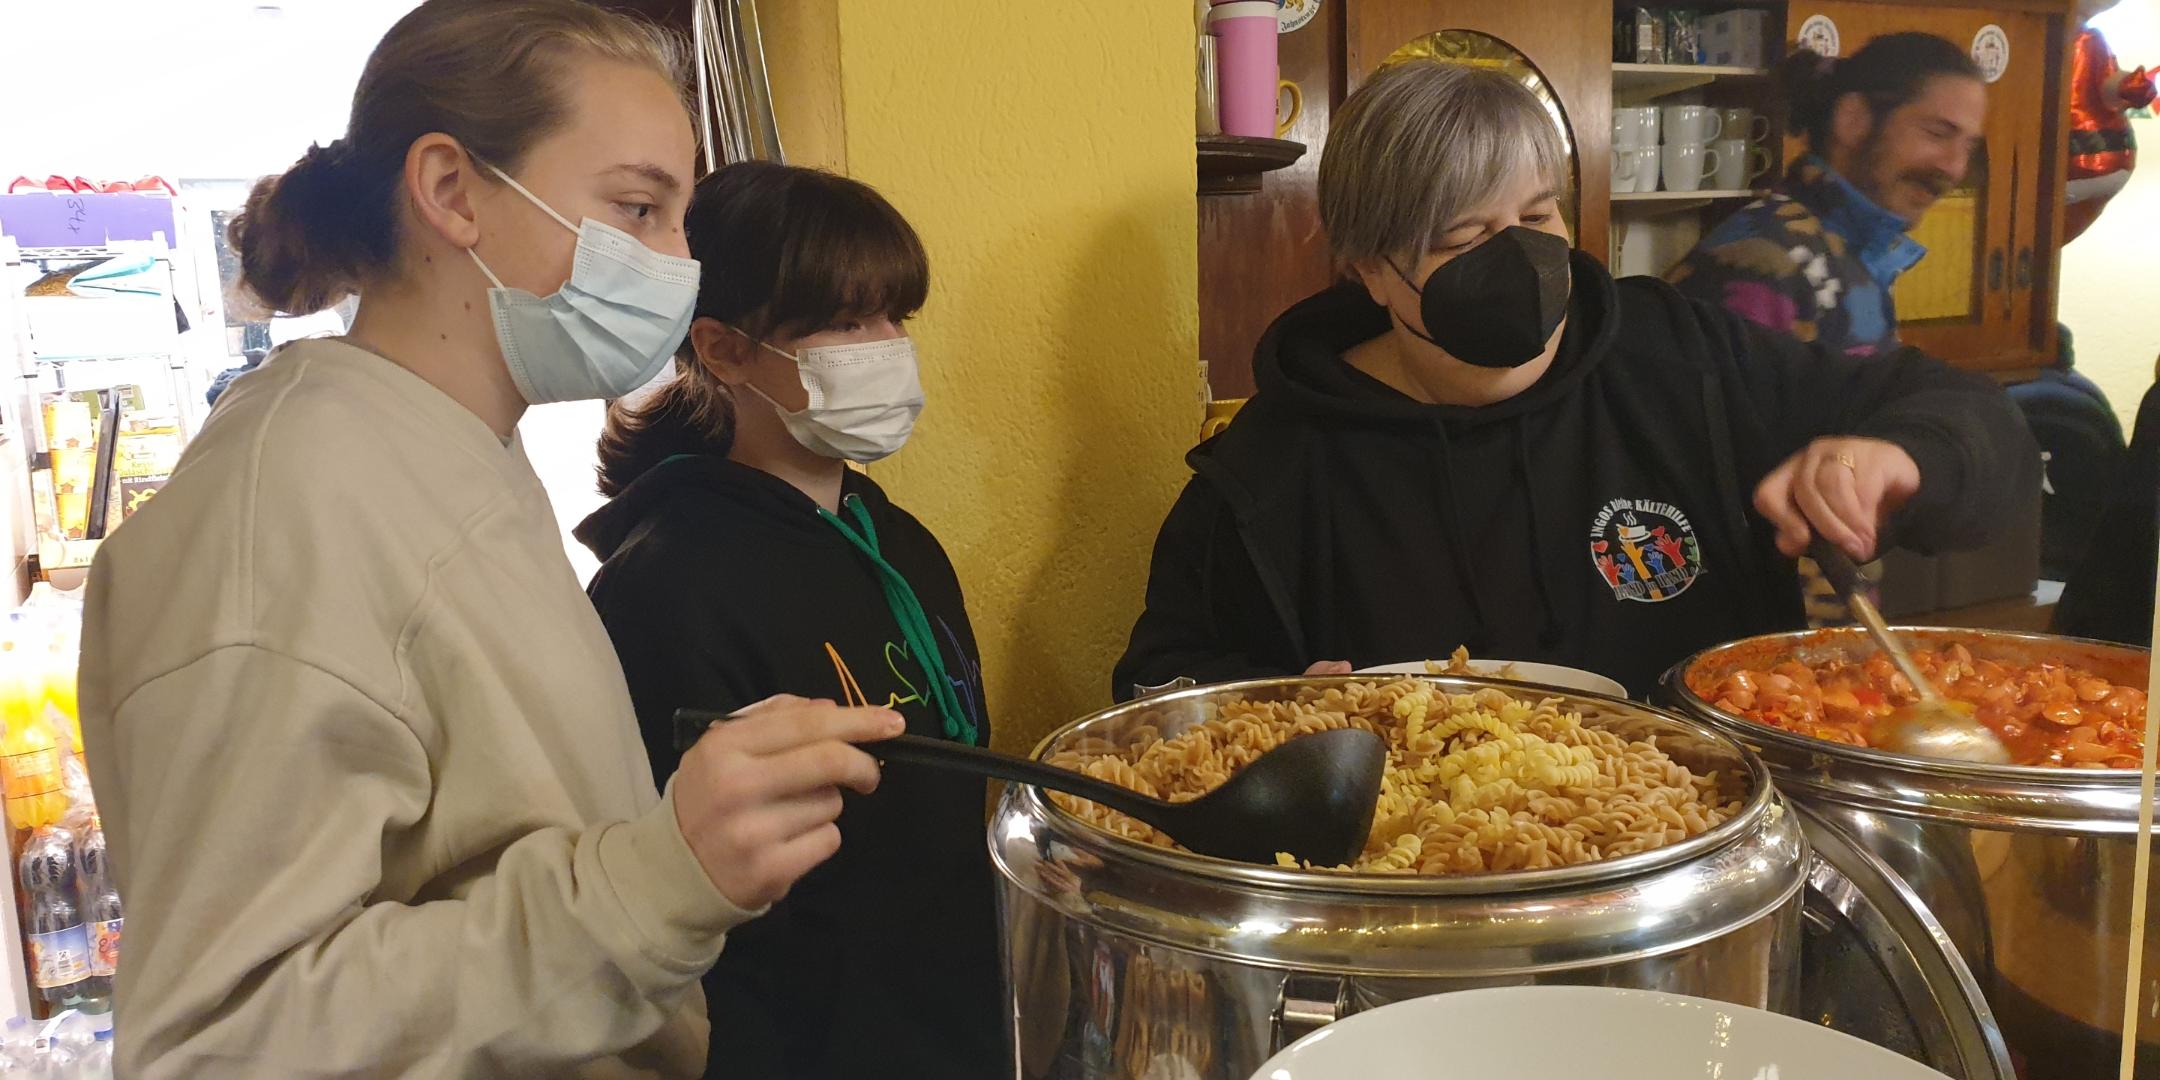 Die Schülerinnen Leandra Schlecker und Sarah Zapp sowie Kerstin Lafontaine, 1. Vorsitzende von Ingos kleiner Kältehilfe, beim Austeilen der Mahlzeiten. (Foto: Silvia Buss)